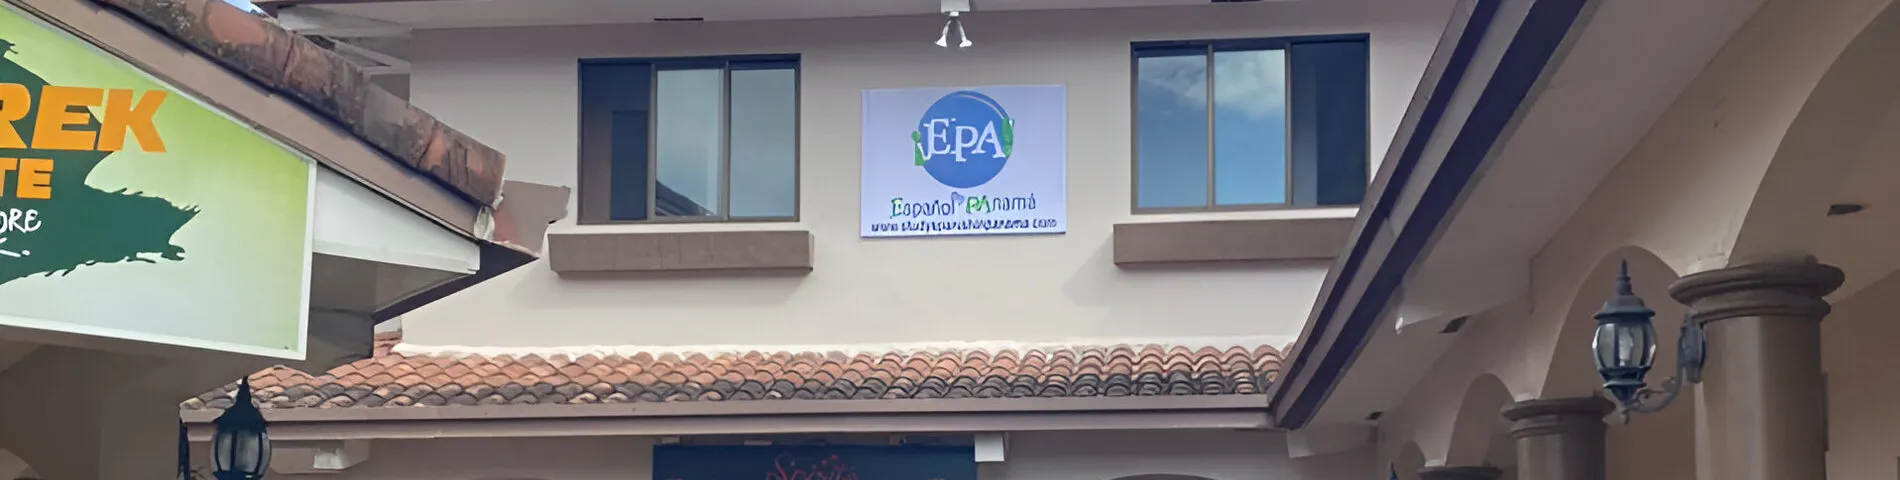 EPA! Español en Panamá画像1